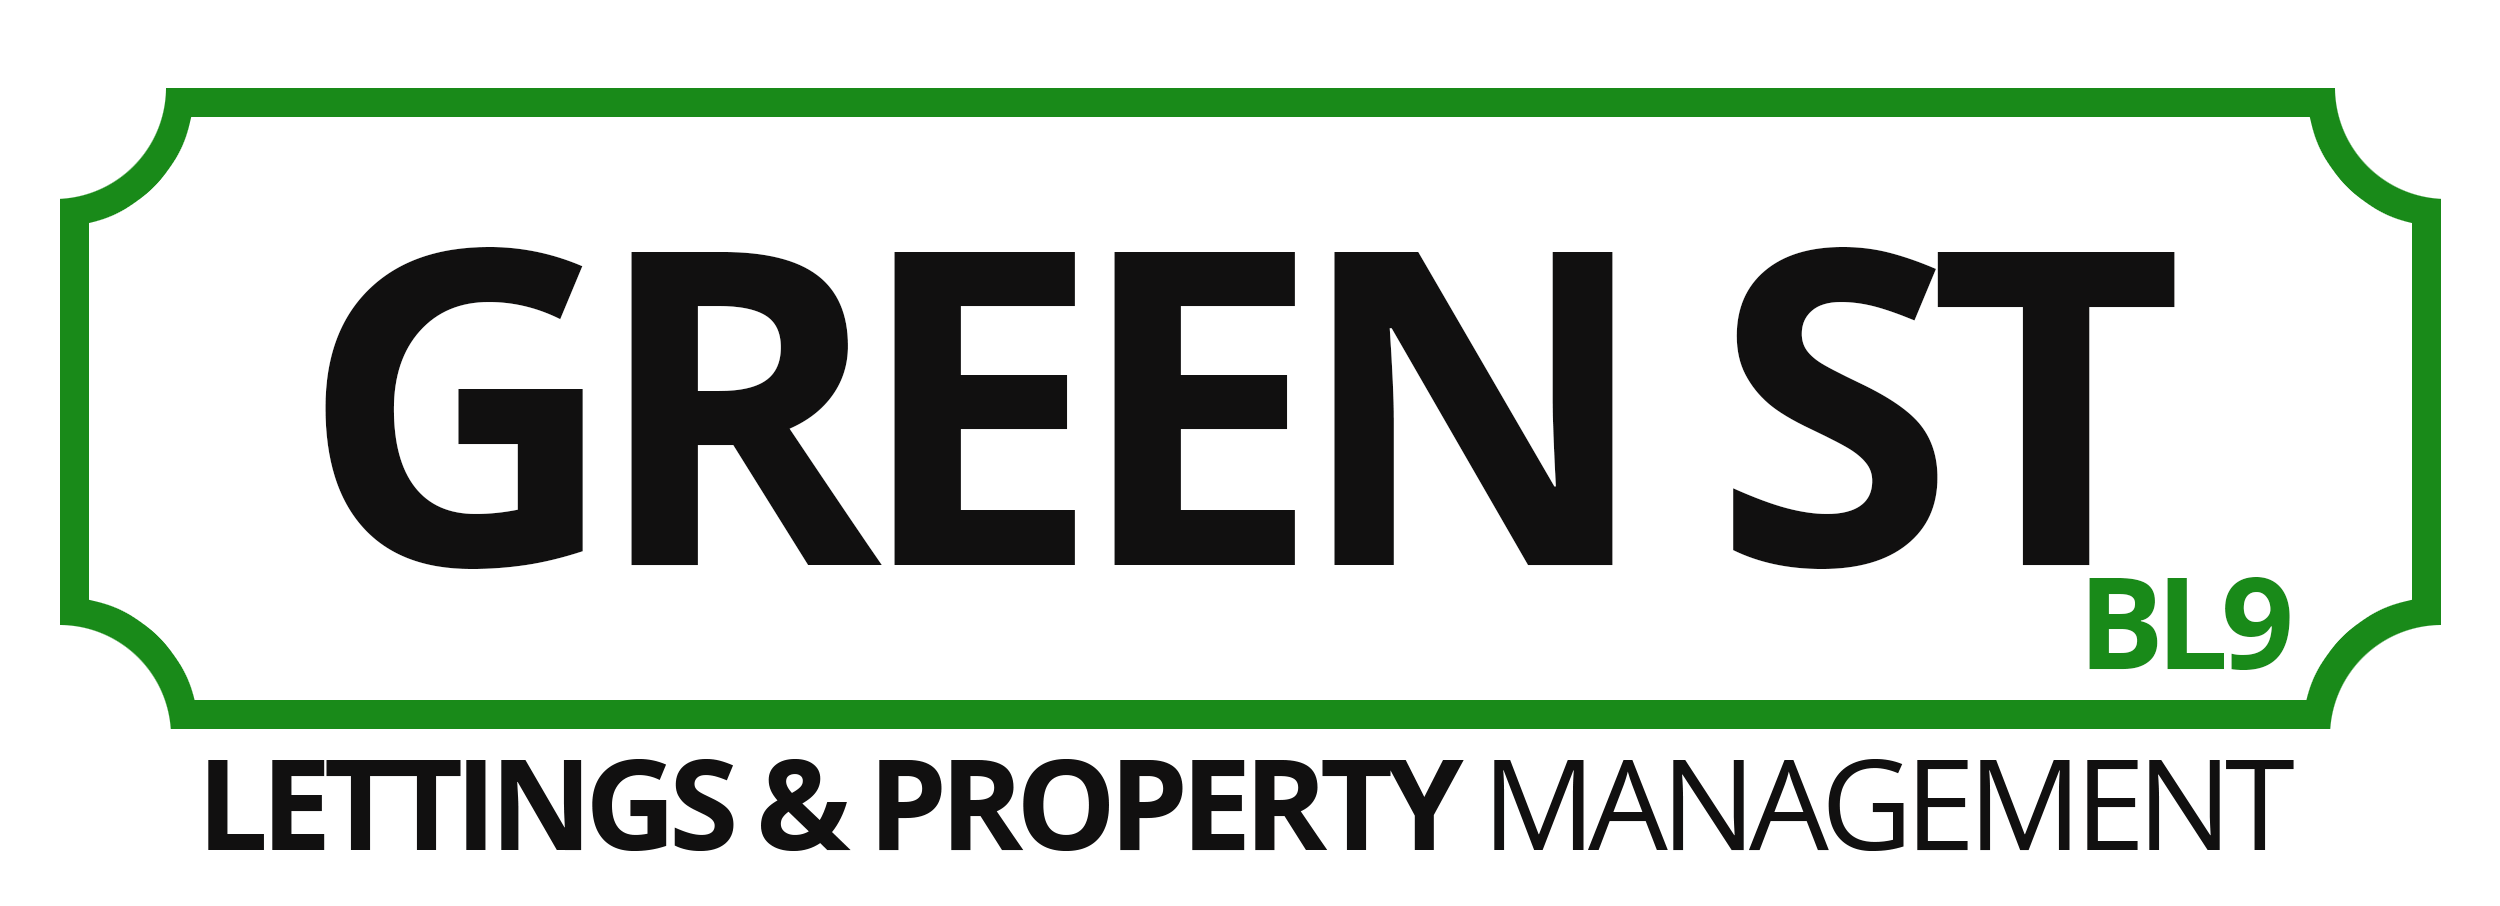 Green Street Logo - Green Street Property Management Business Directory